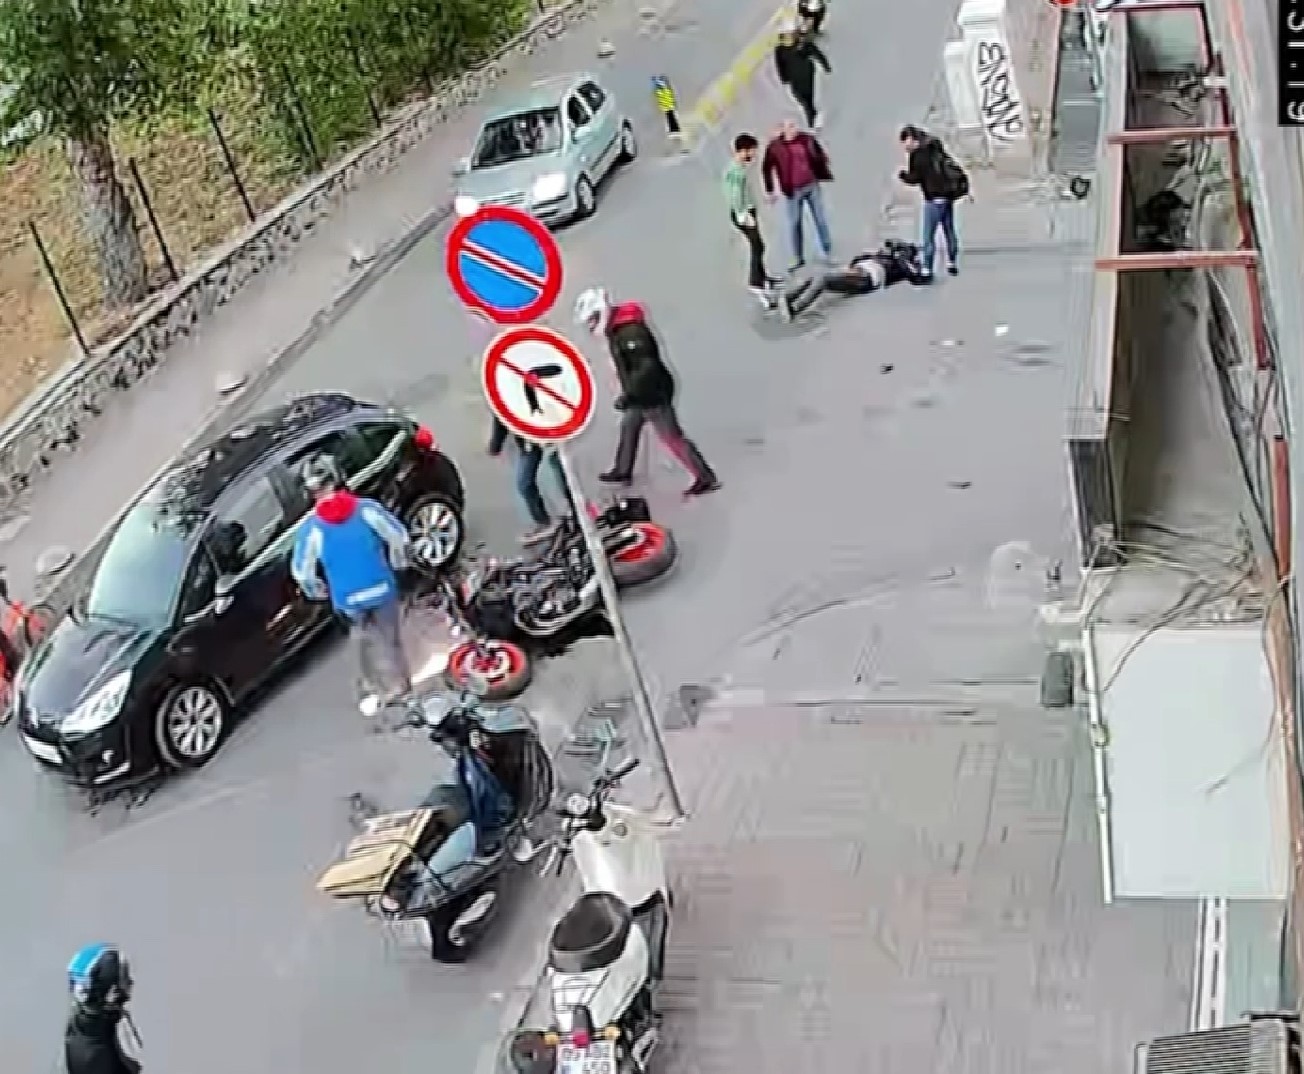 (Özel) Kadıköy’ün ‘ölüm sokağı’ tehlike saçıyor #istanbul